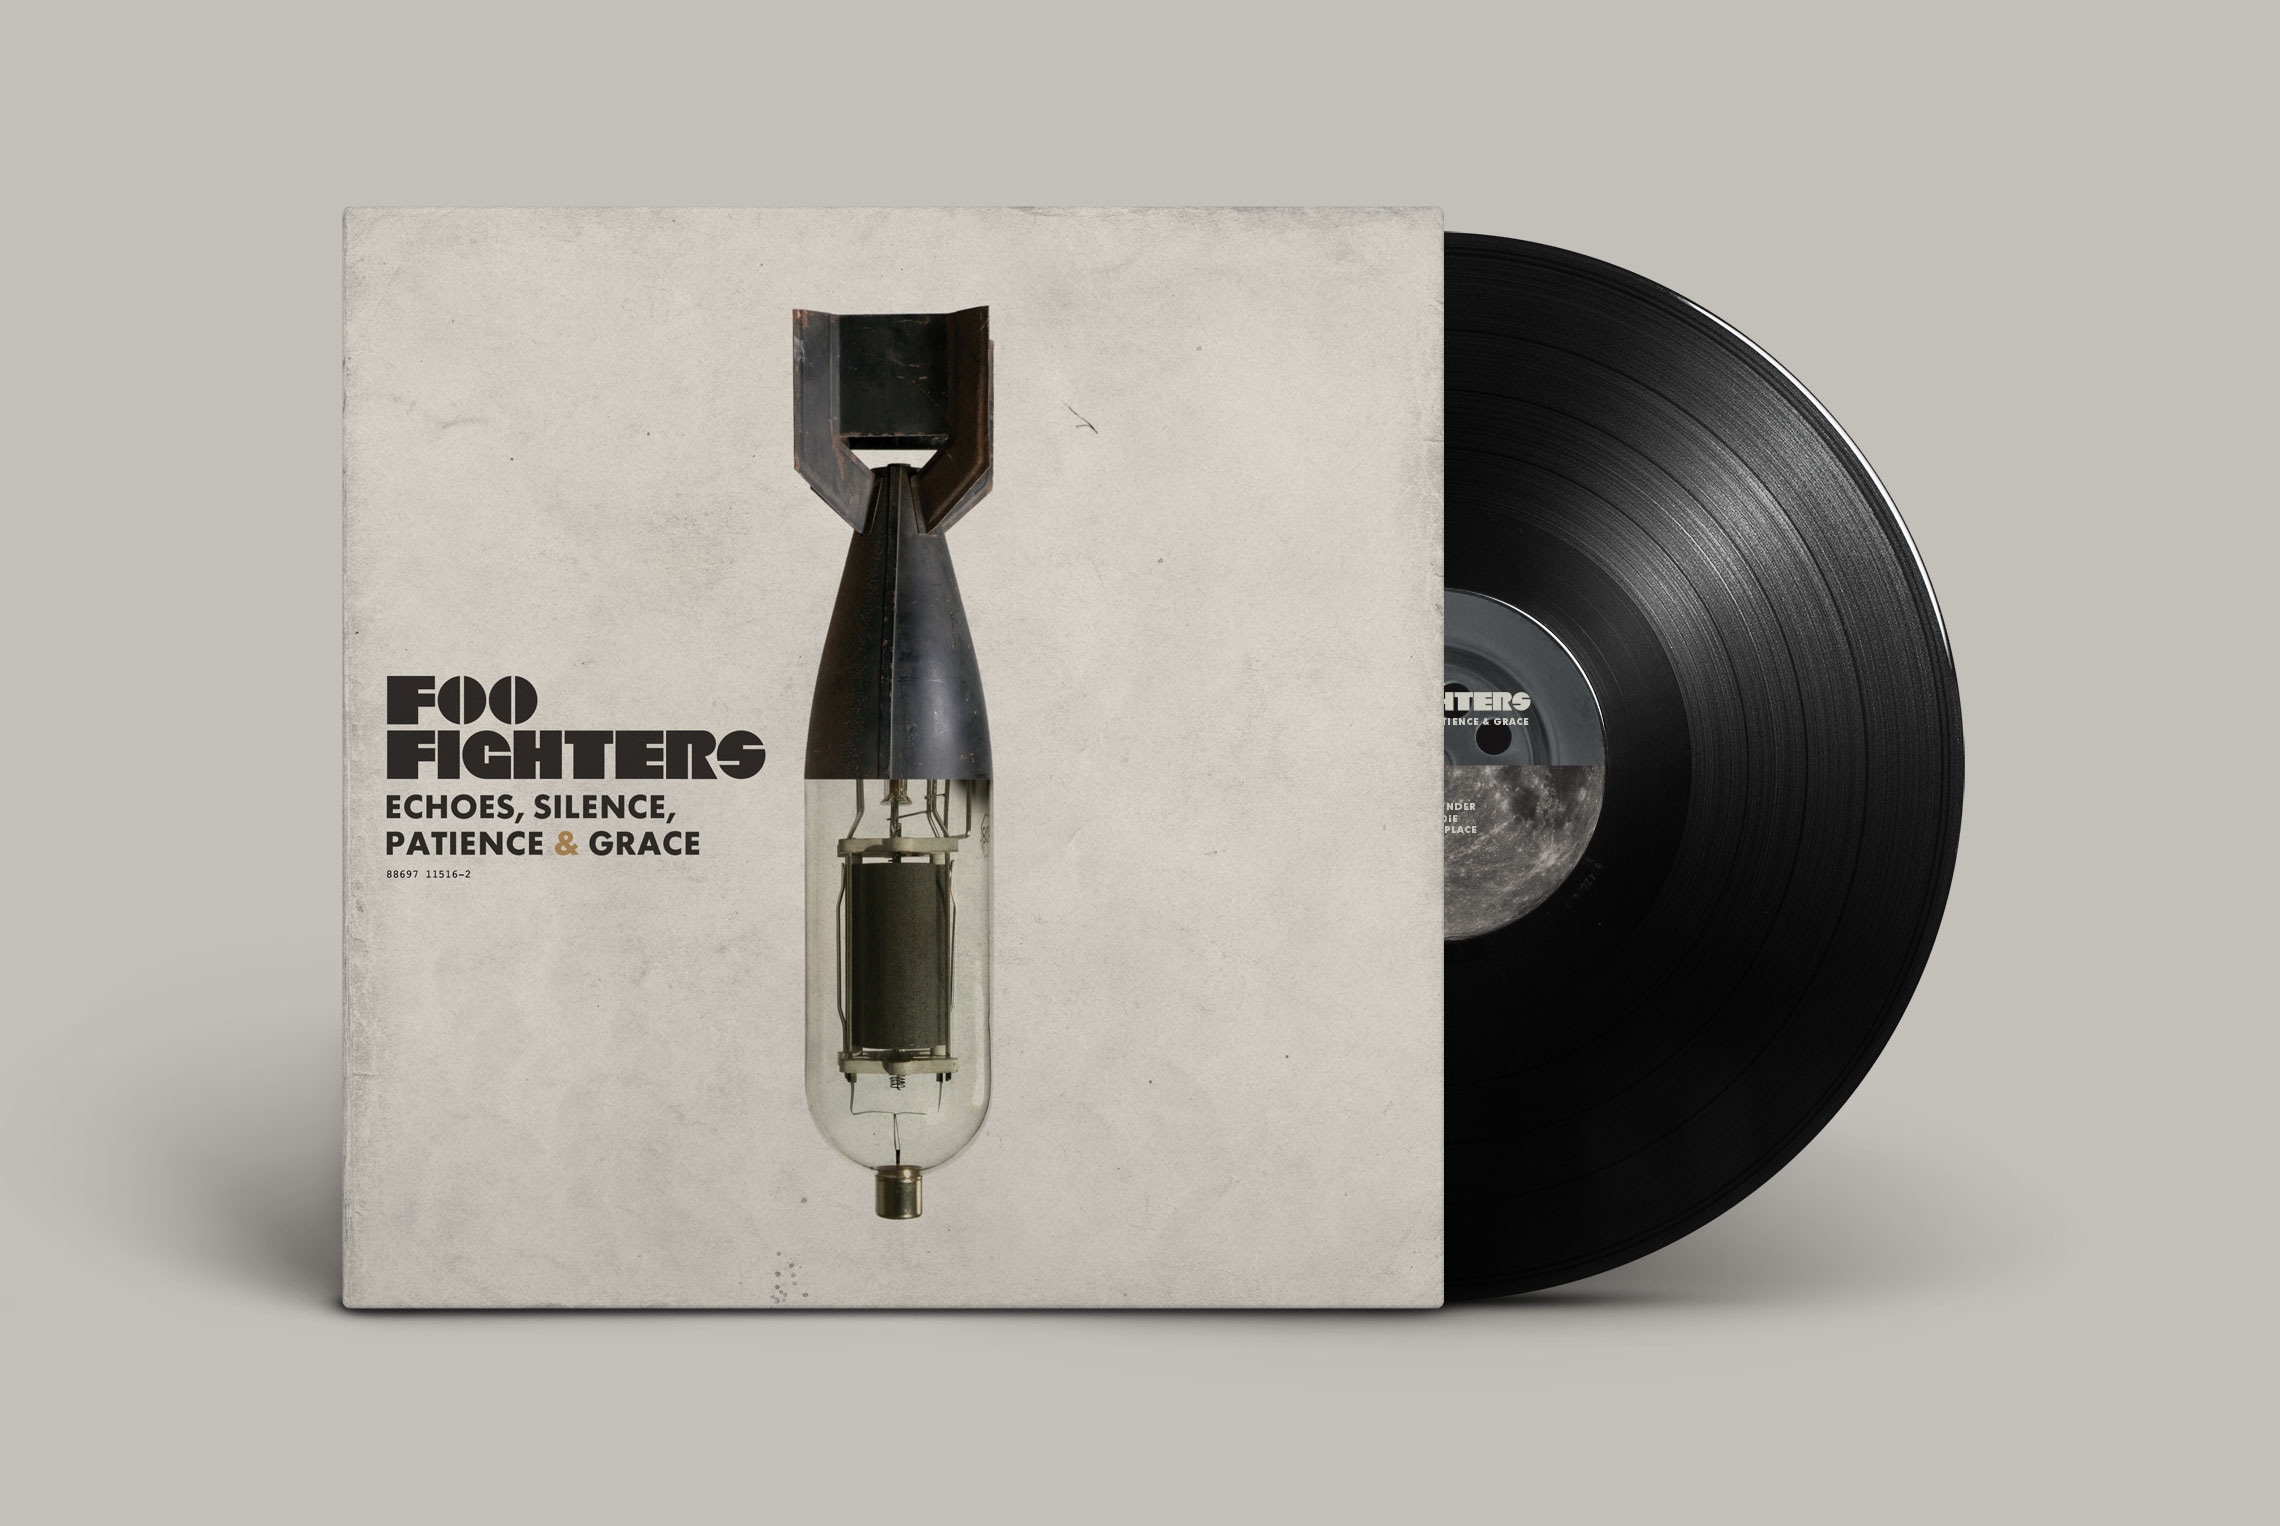 Foo Fighters 